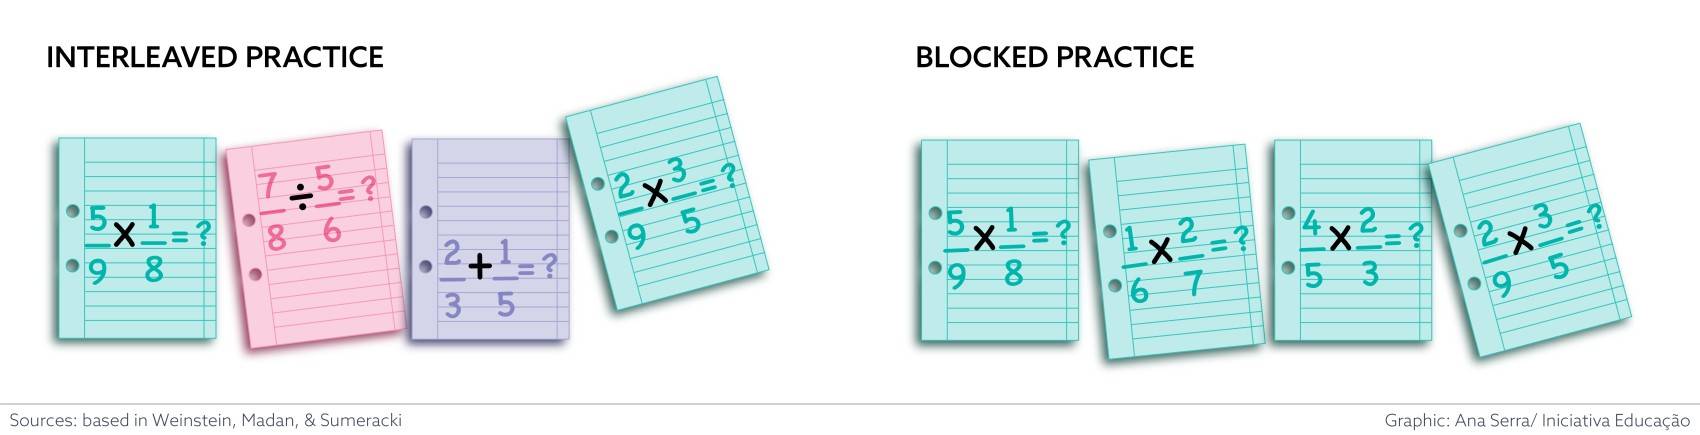 blocked vs interleaved practice